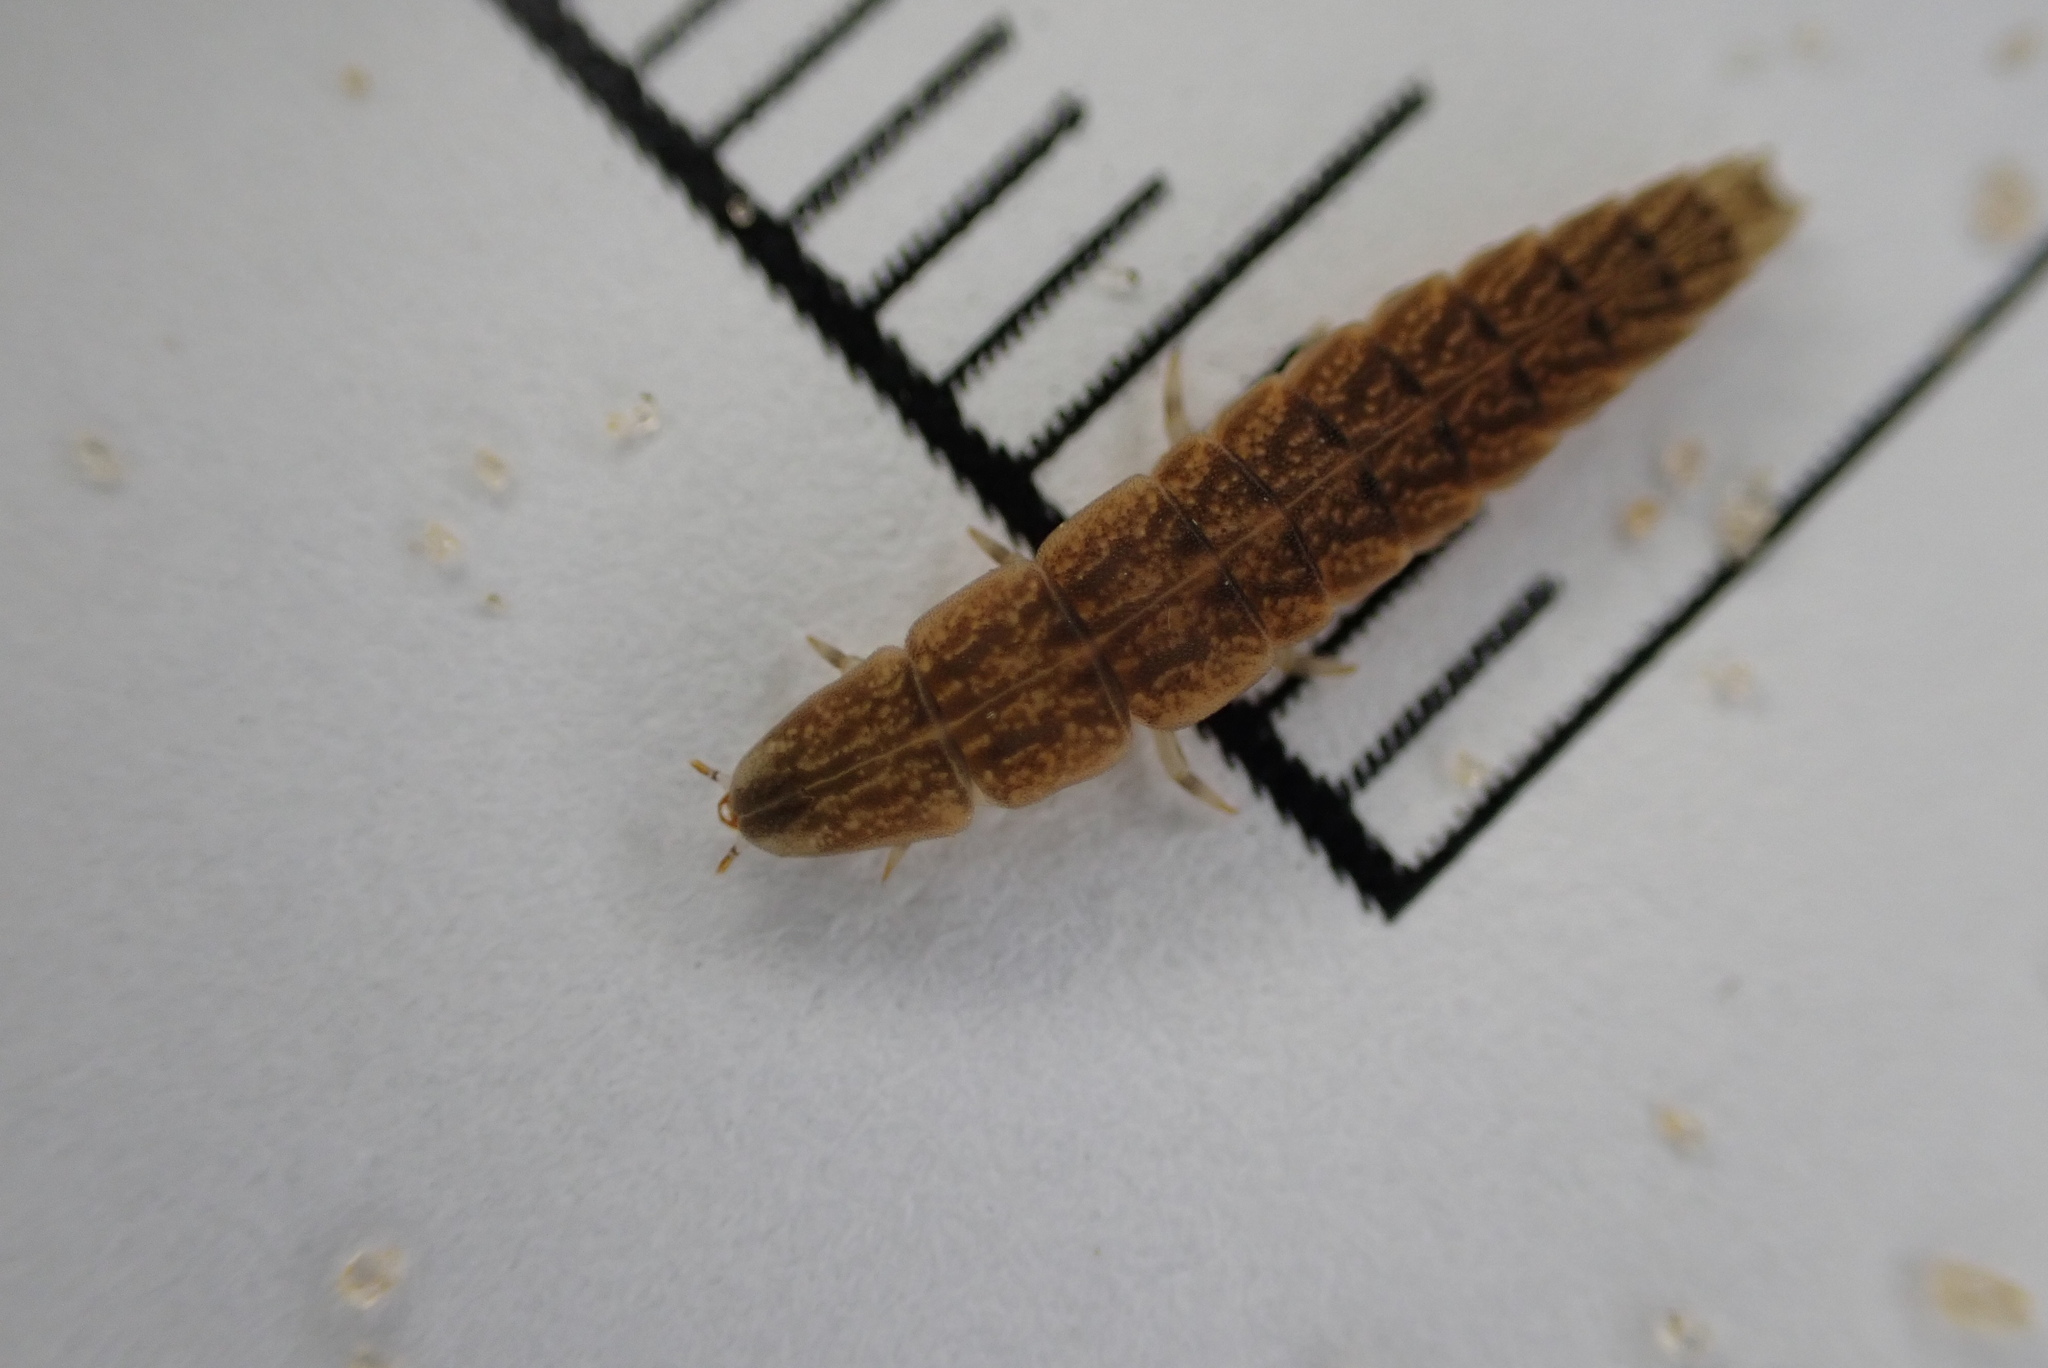 Pleotomodes firefly larva